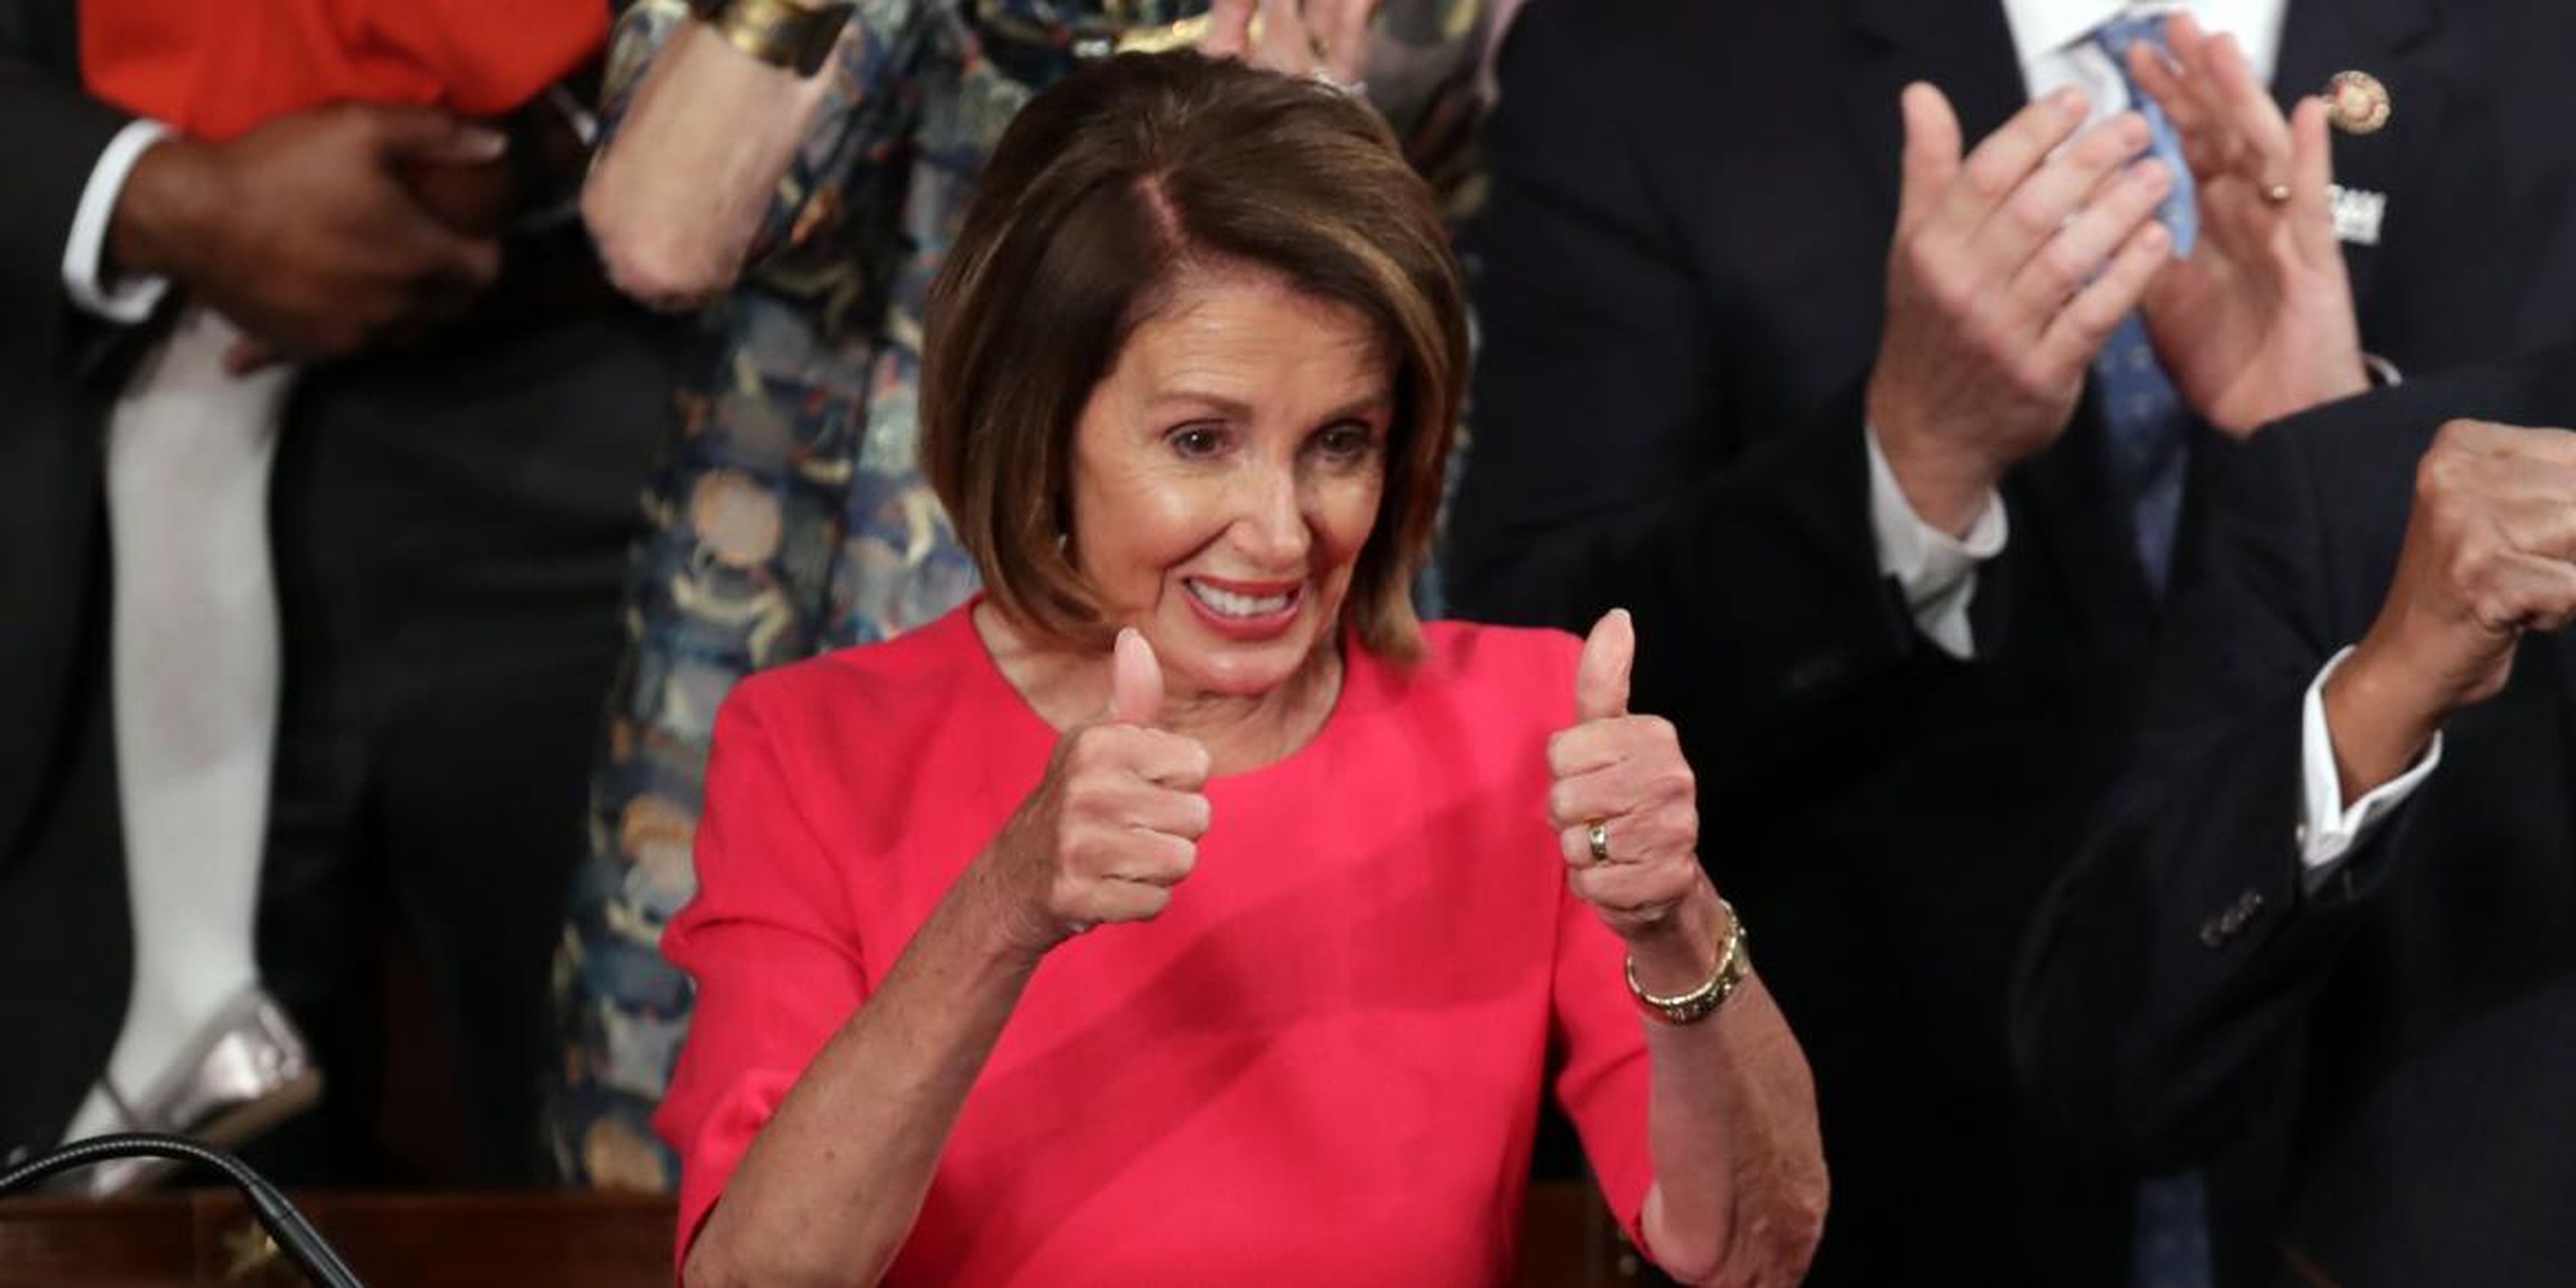 La presidenta de la Cámara de Representantes, Nancy Pelosi (D-CA), hace gestos durante la primera sesión del 116º Congreso en el Capitolio de Estados Unidos el 3 de enero de 2019 en Washington, DC.